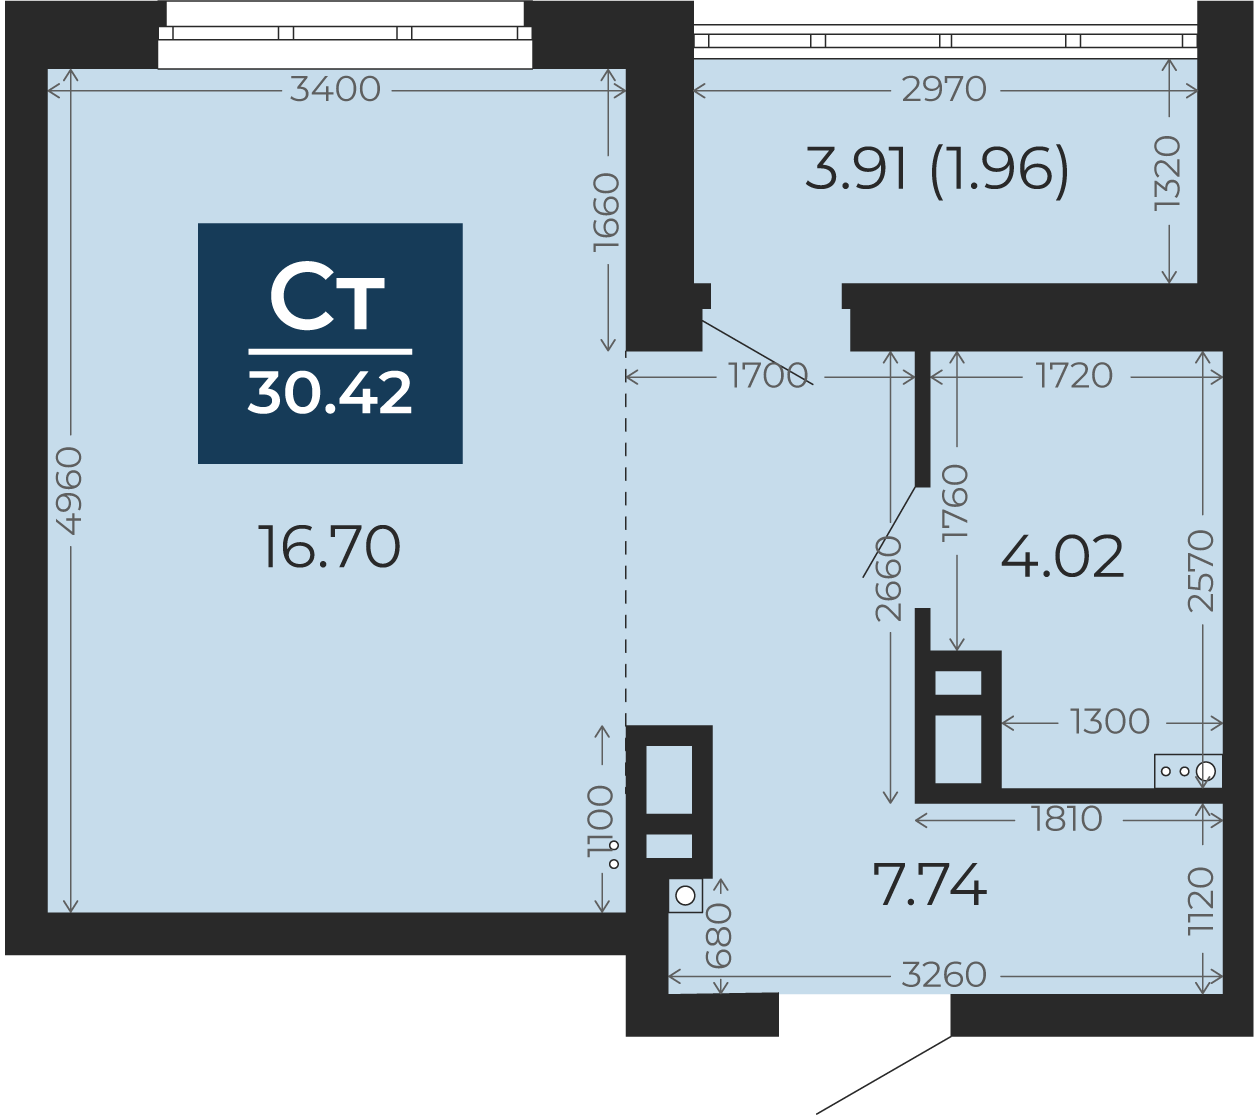 Квартира № 339, Студия, 30.42 кв. м, 8 этаж